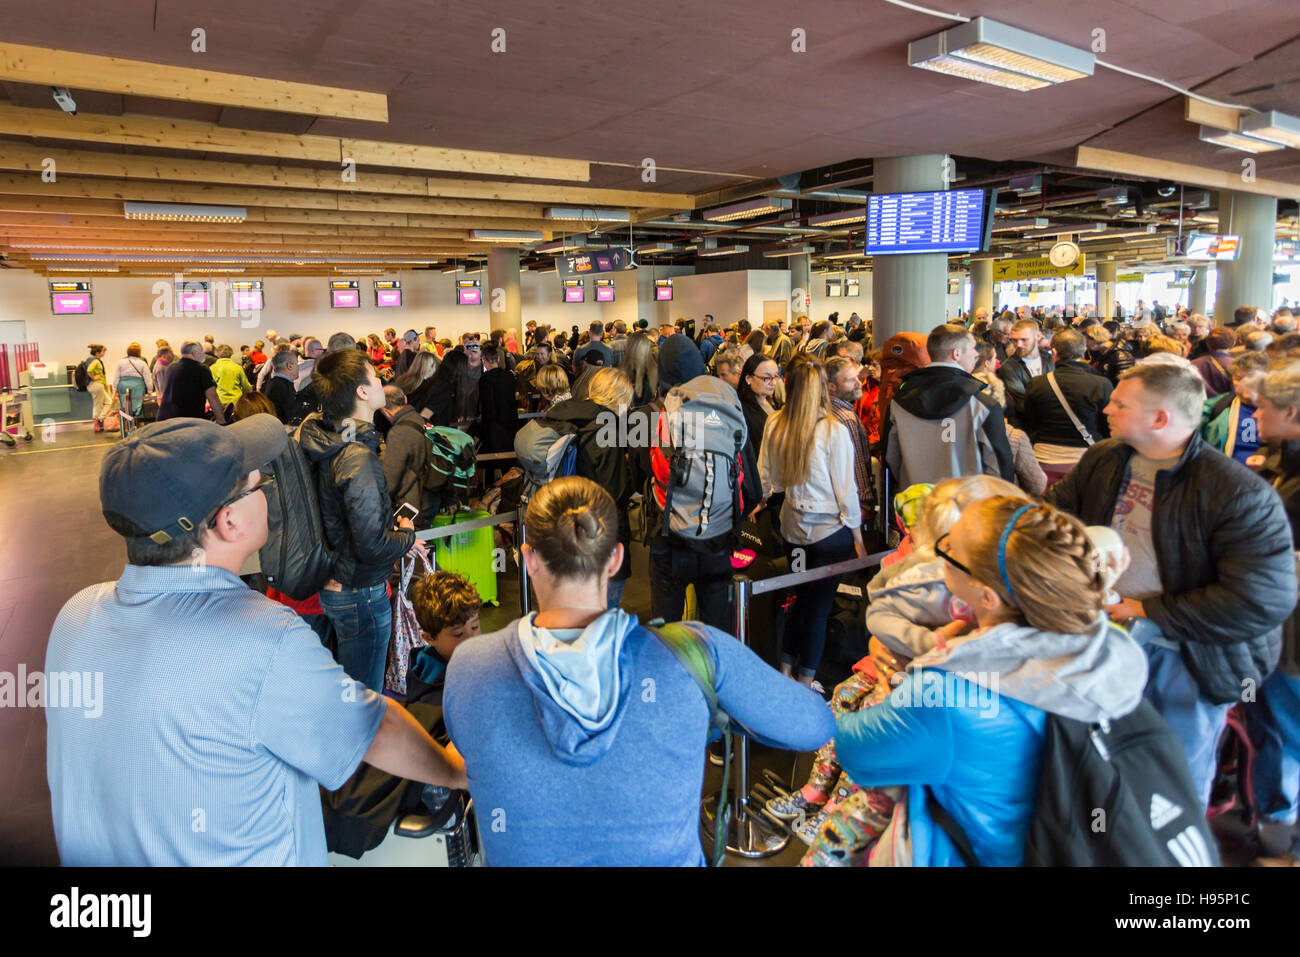 Les passagers à l'arrivée pour WOW Air, l'aéroport international de Keflavik, Islande Banque D'Images